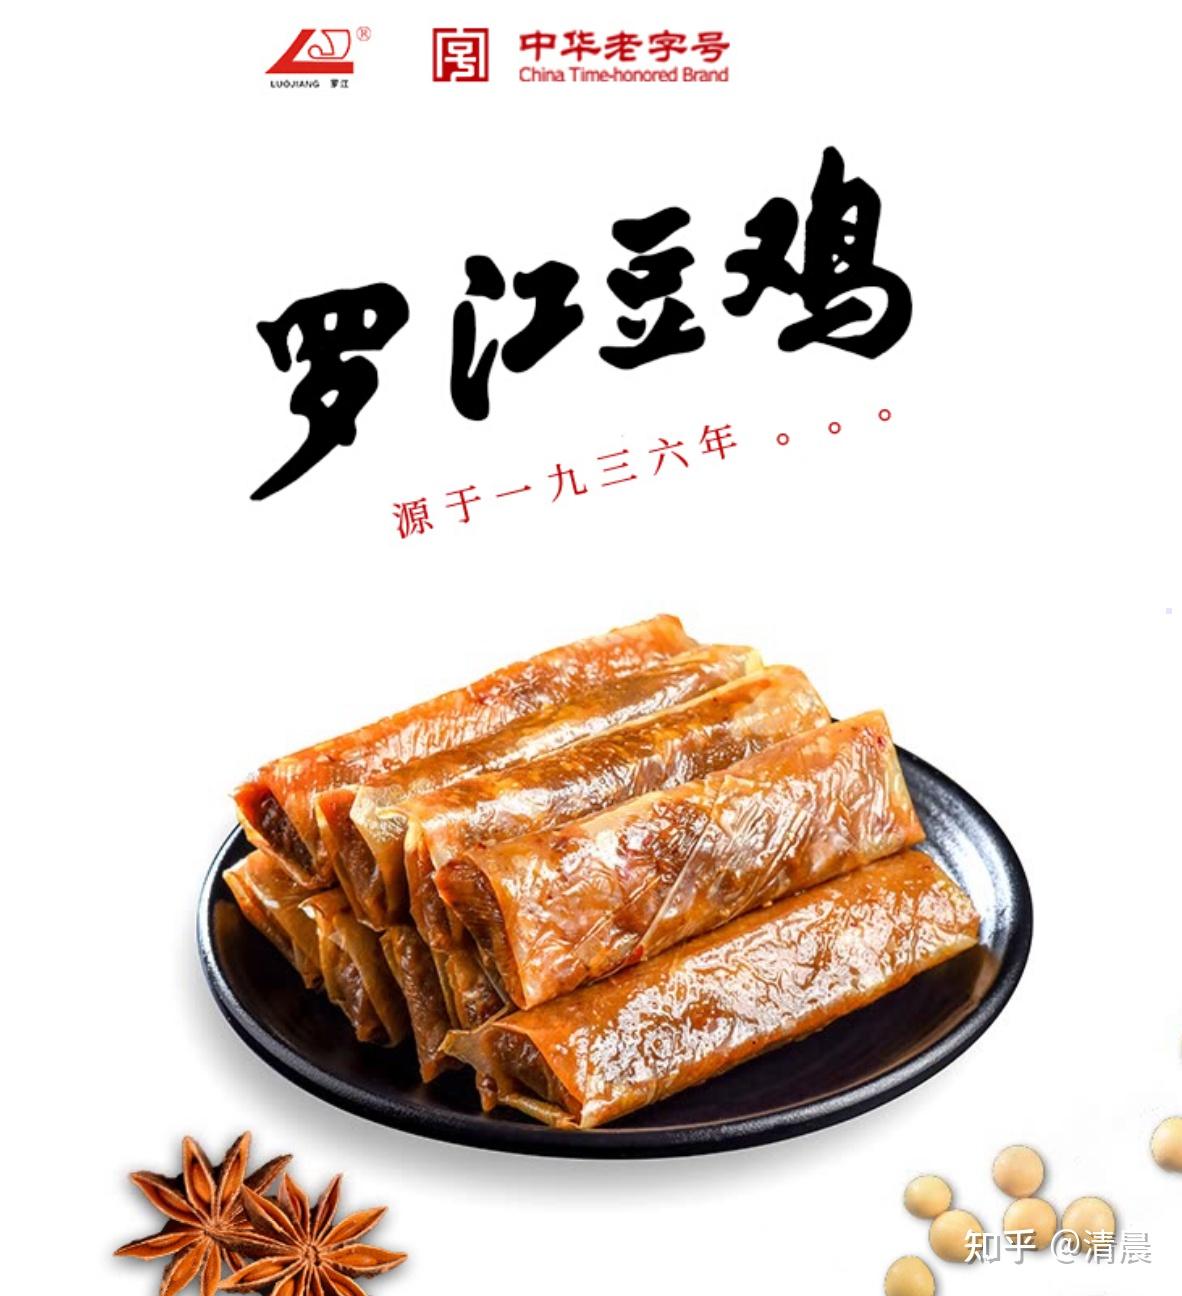 数百年经典美食推荐,中华老字号之「四川省」成都美食,成都特产